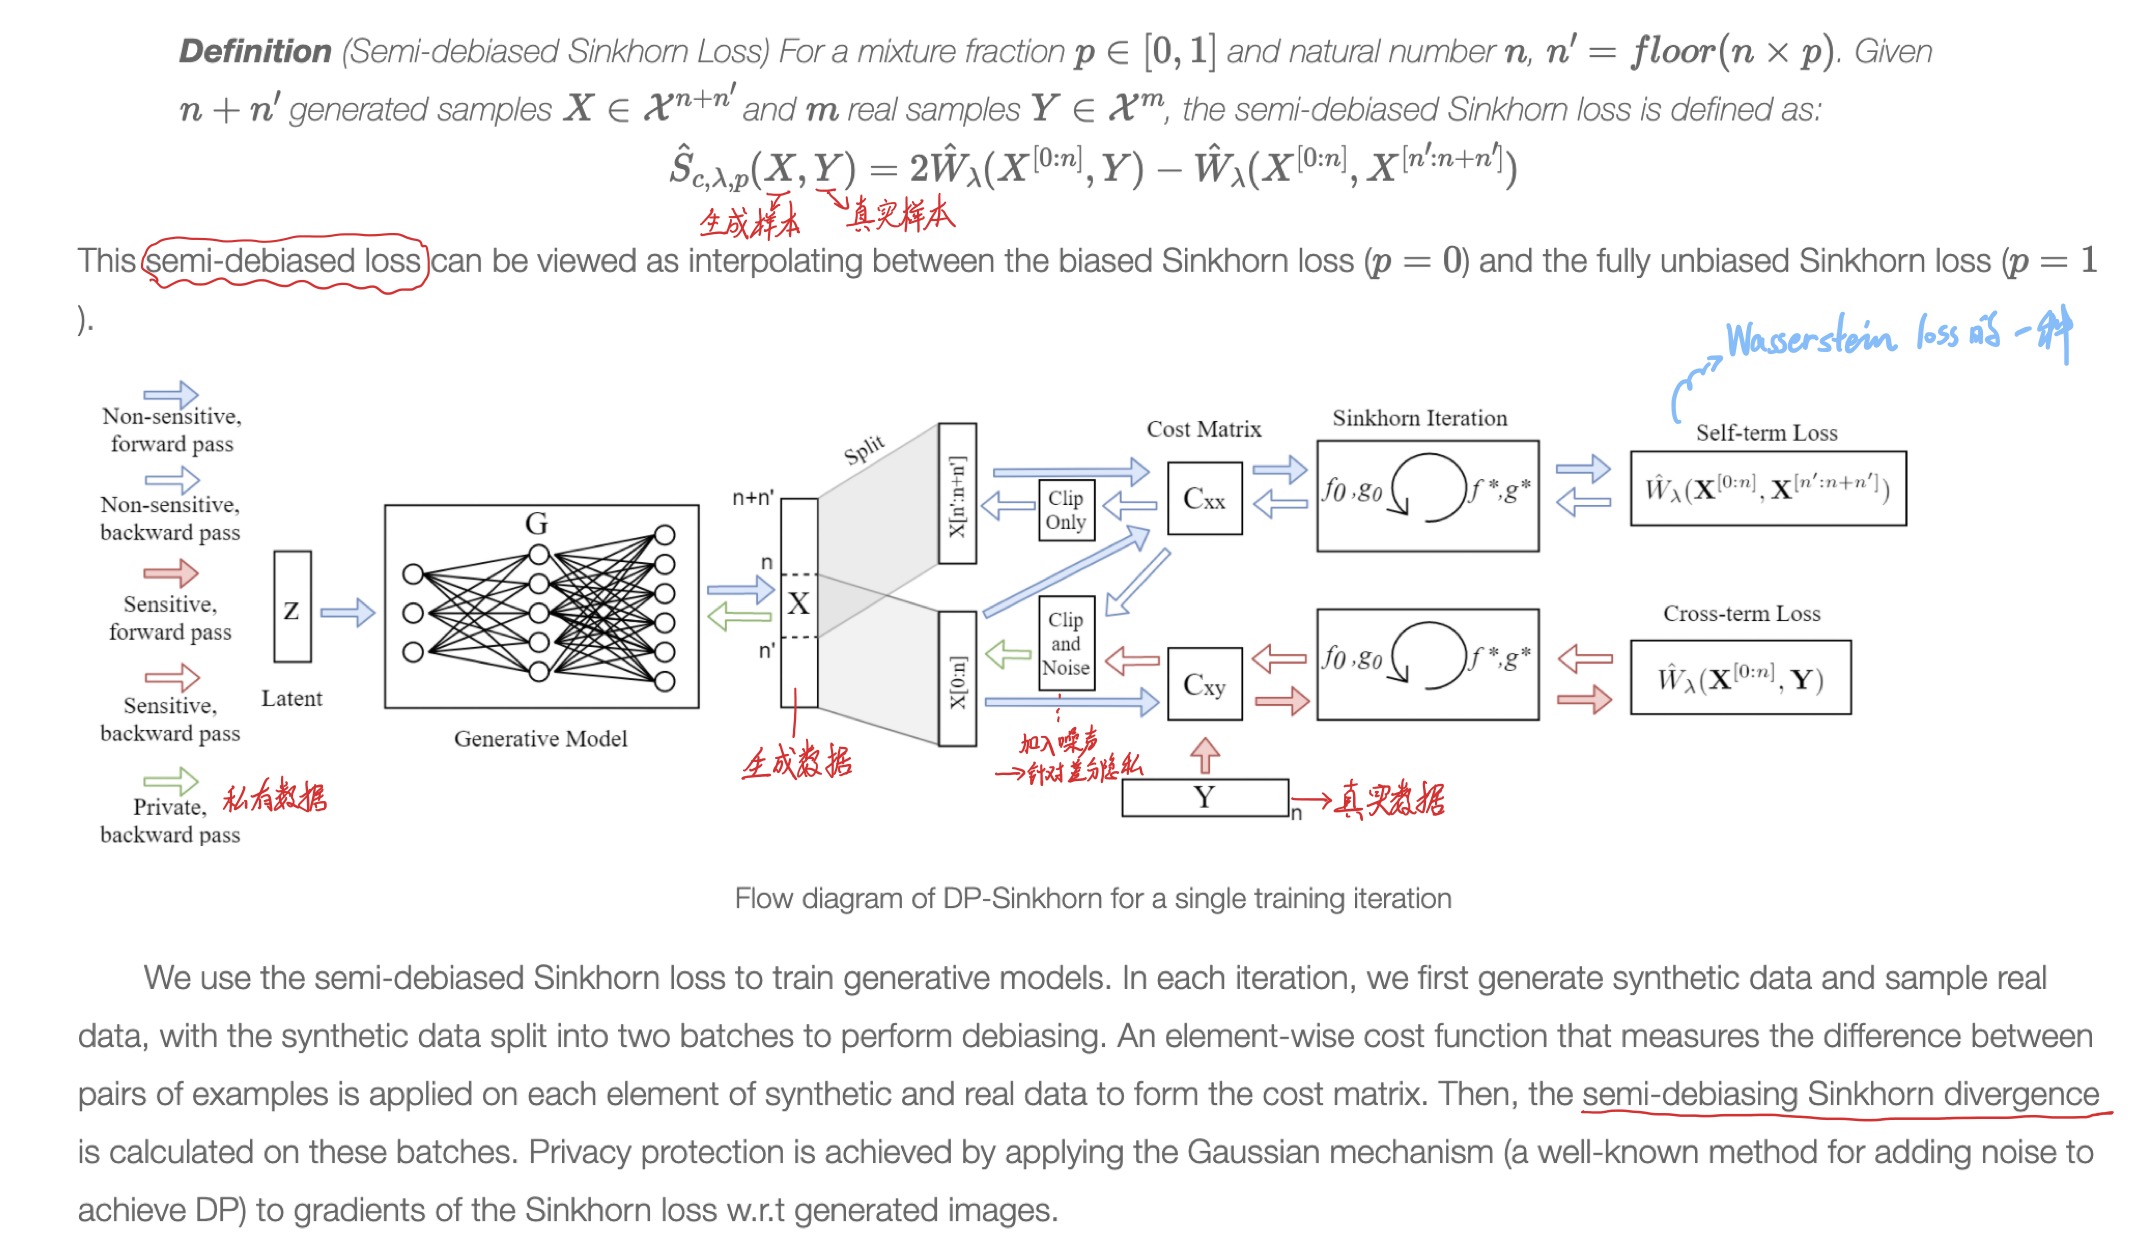 图1-2 DP-Sinkhorn方法流程